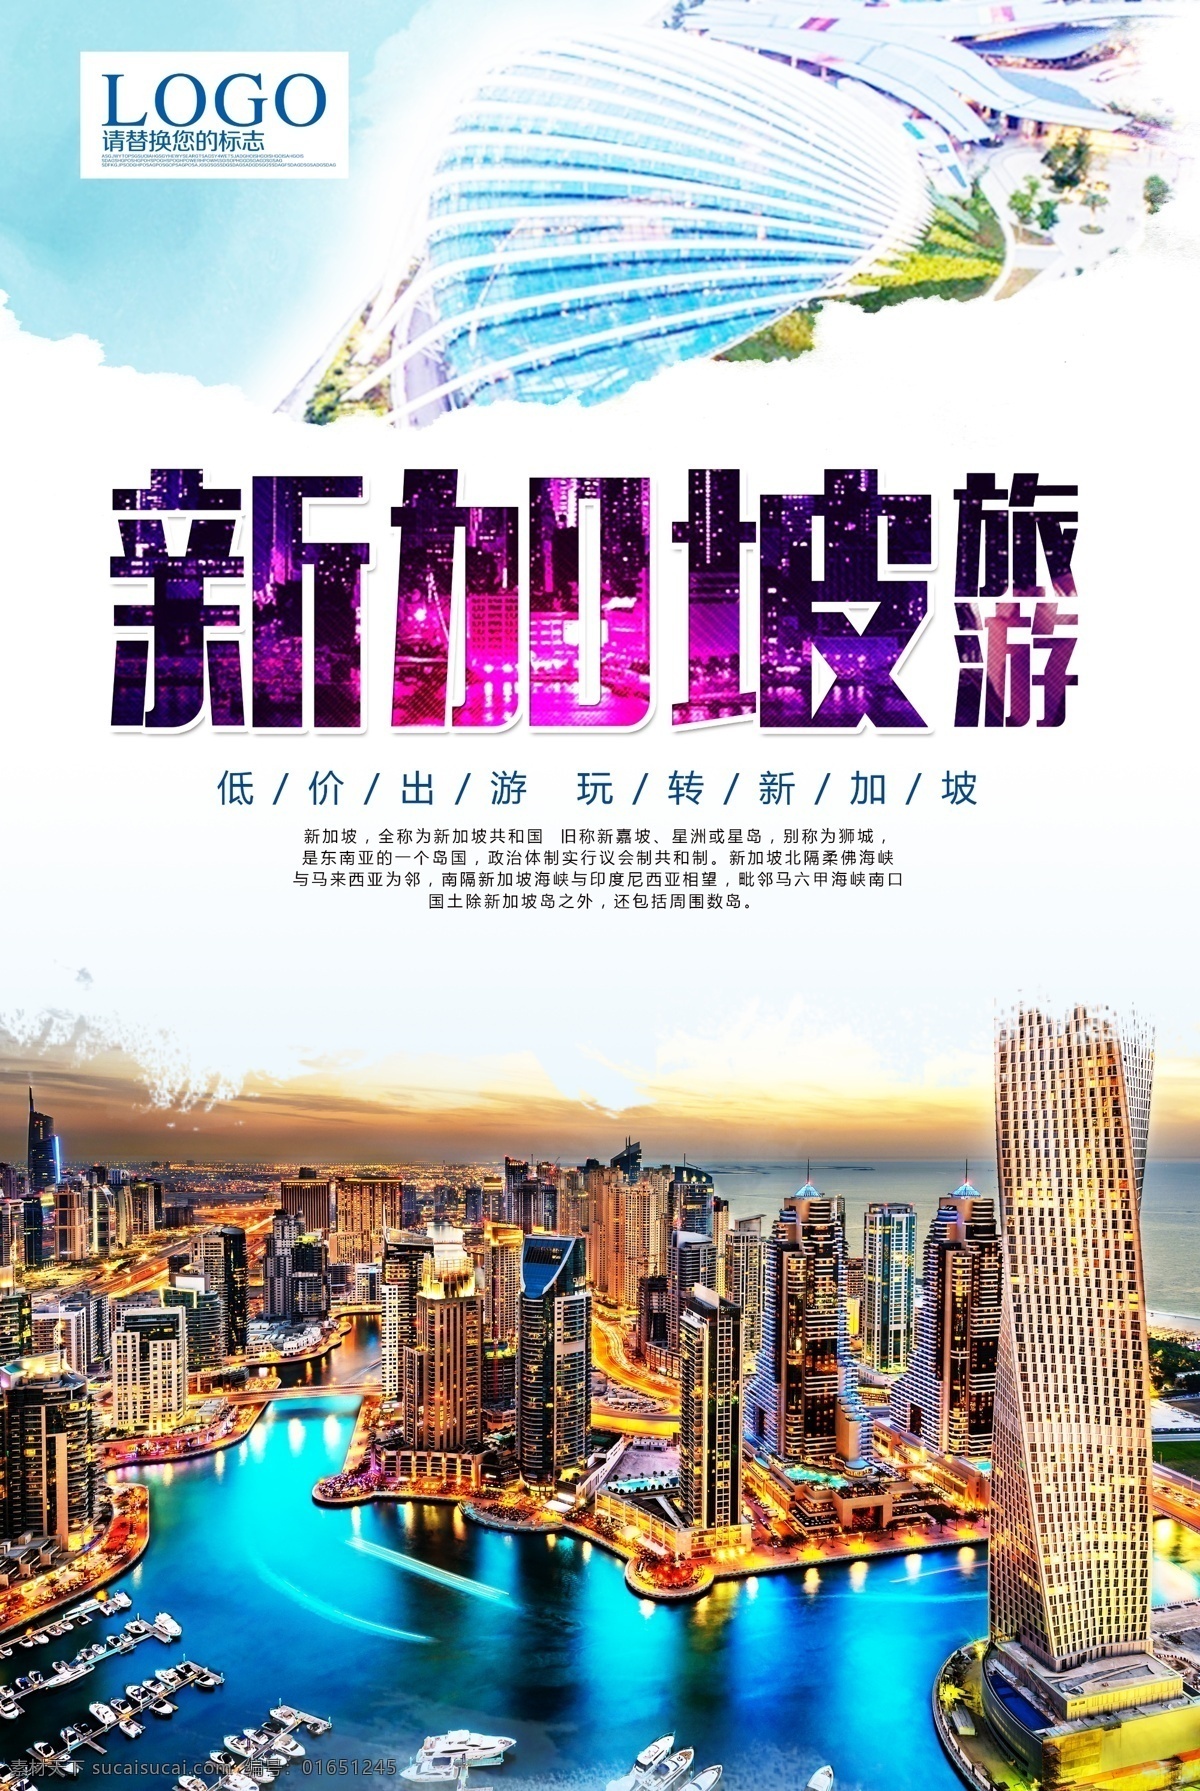 新加坡 旅游 海报 空中花园 旅游psd 纯玩 直飞 免费模版